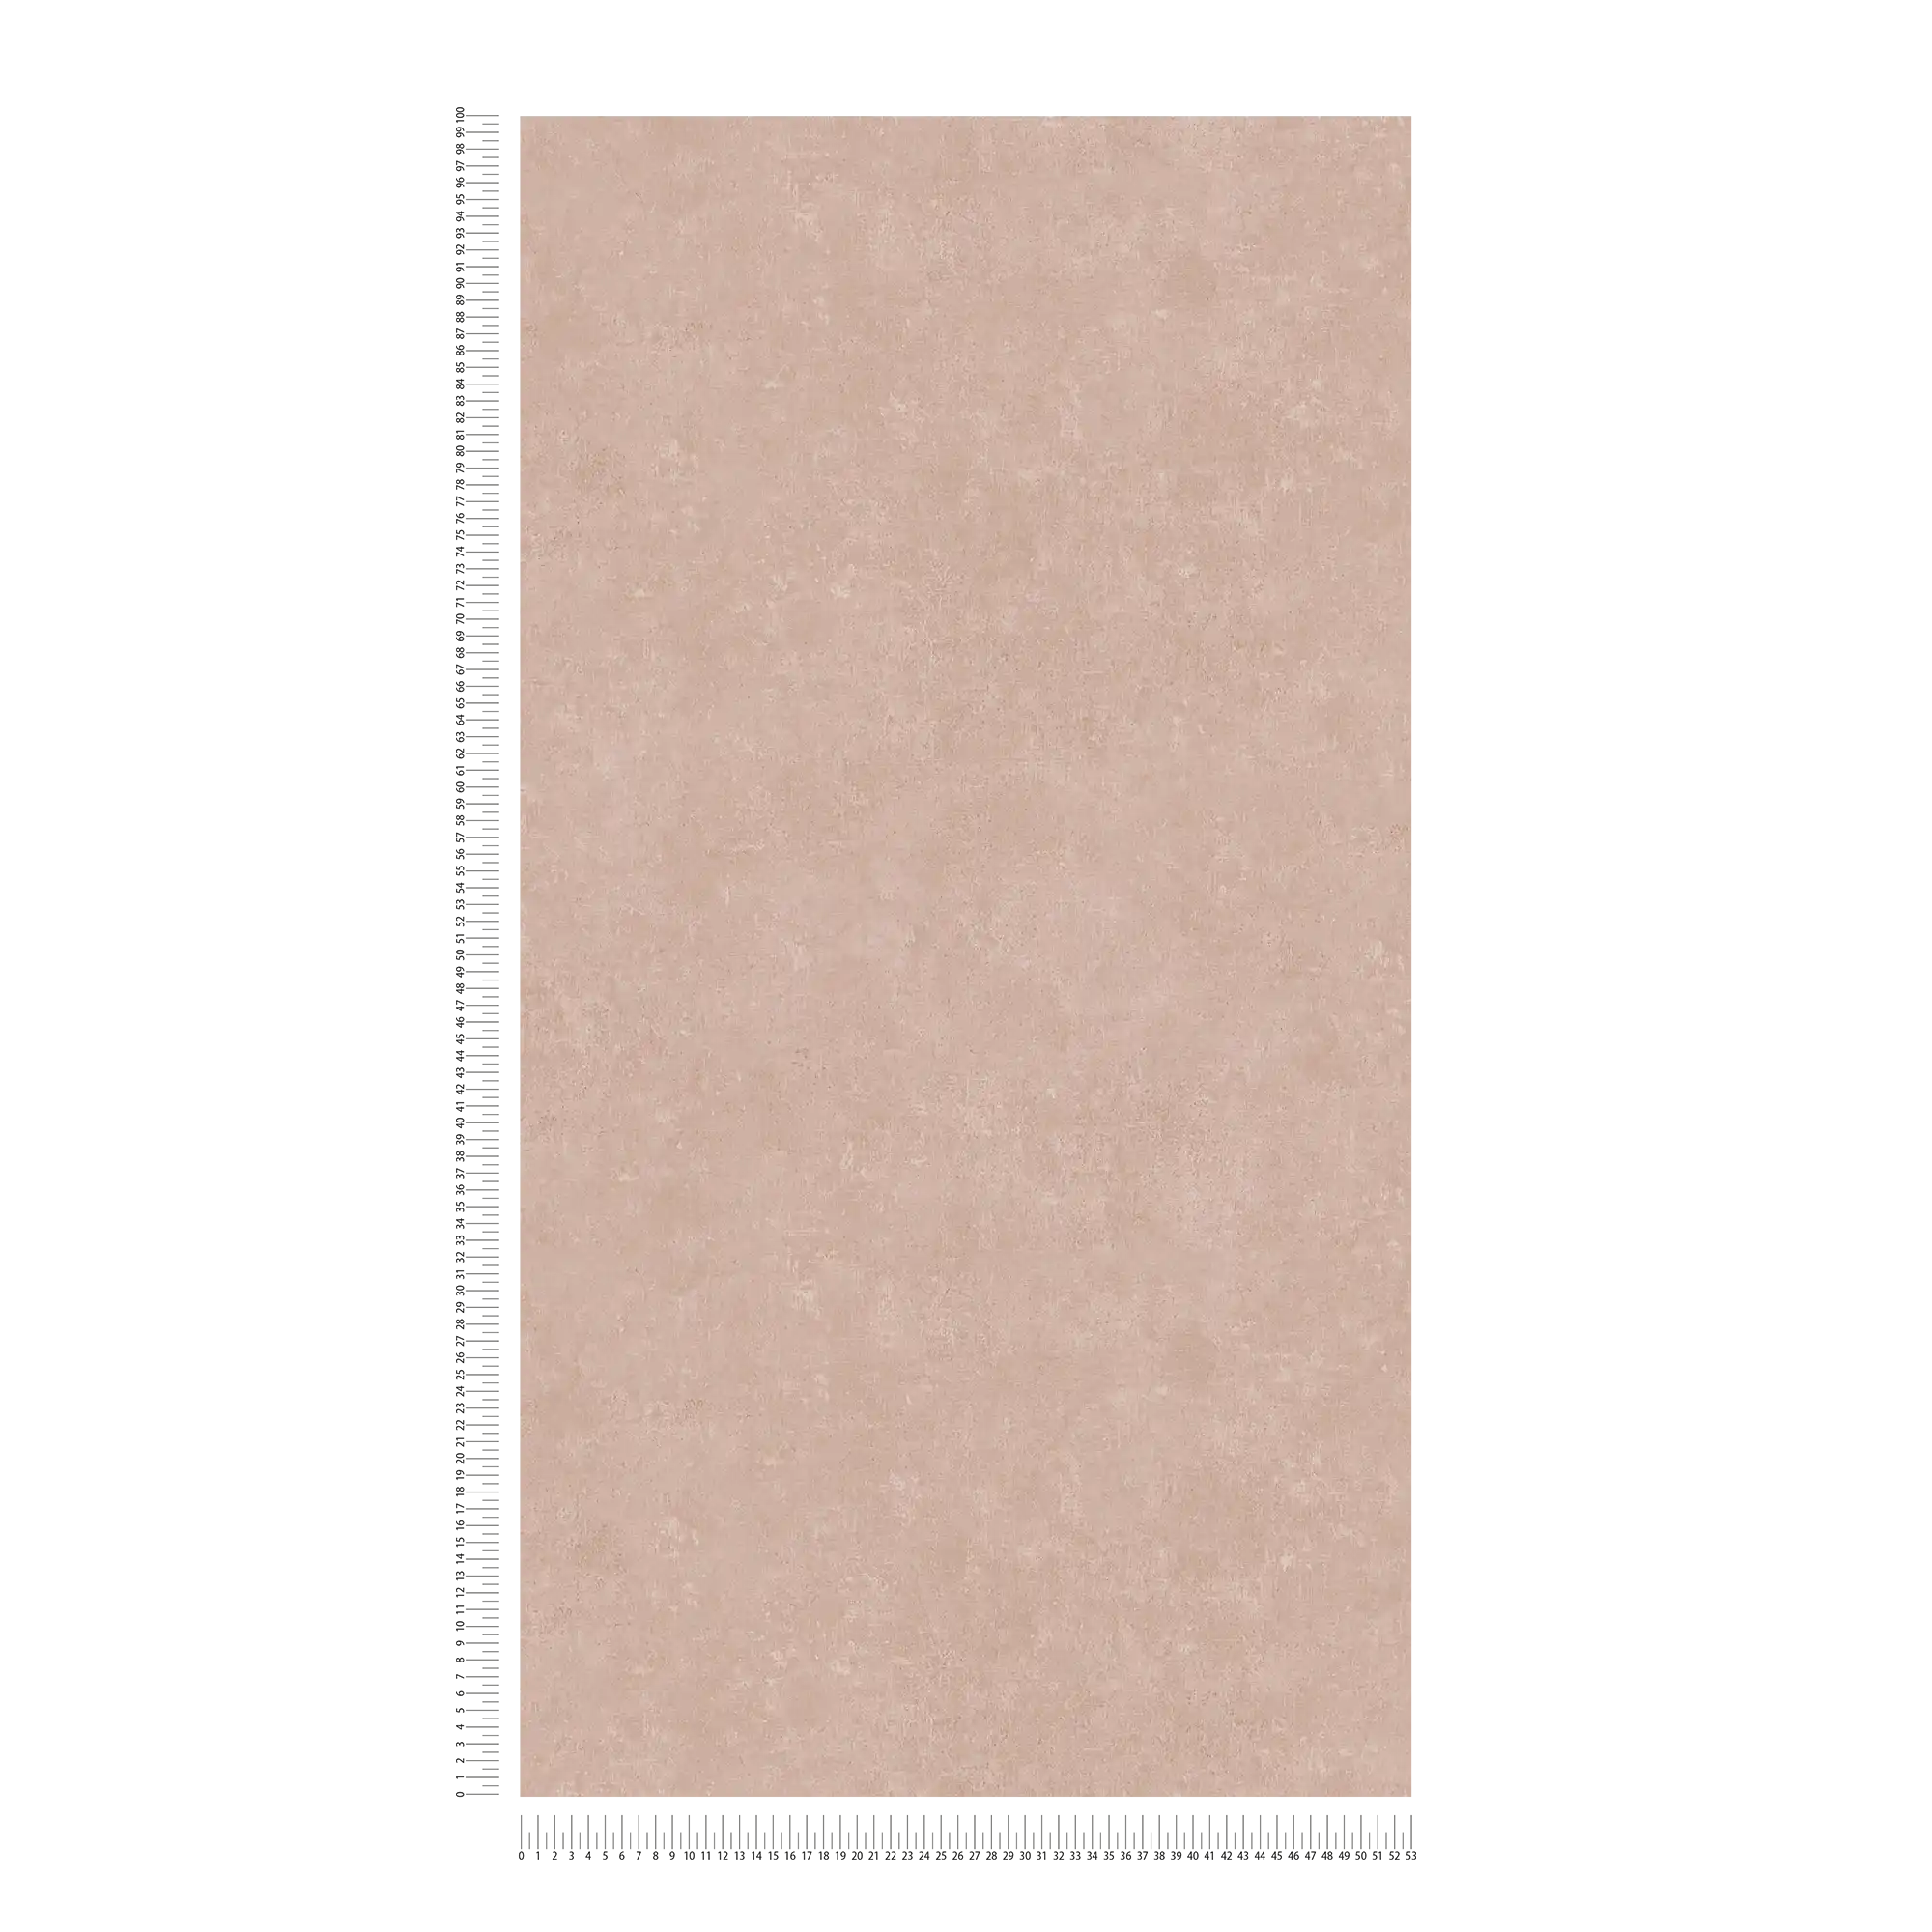             Vliesbehang met ton sur ton patroon, used look - roze
        